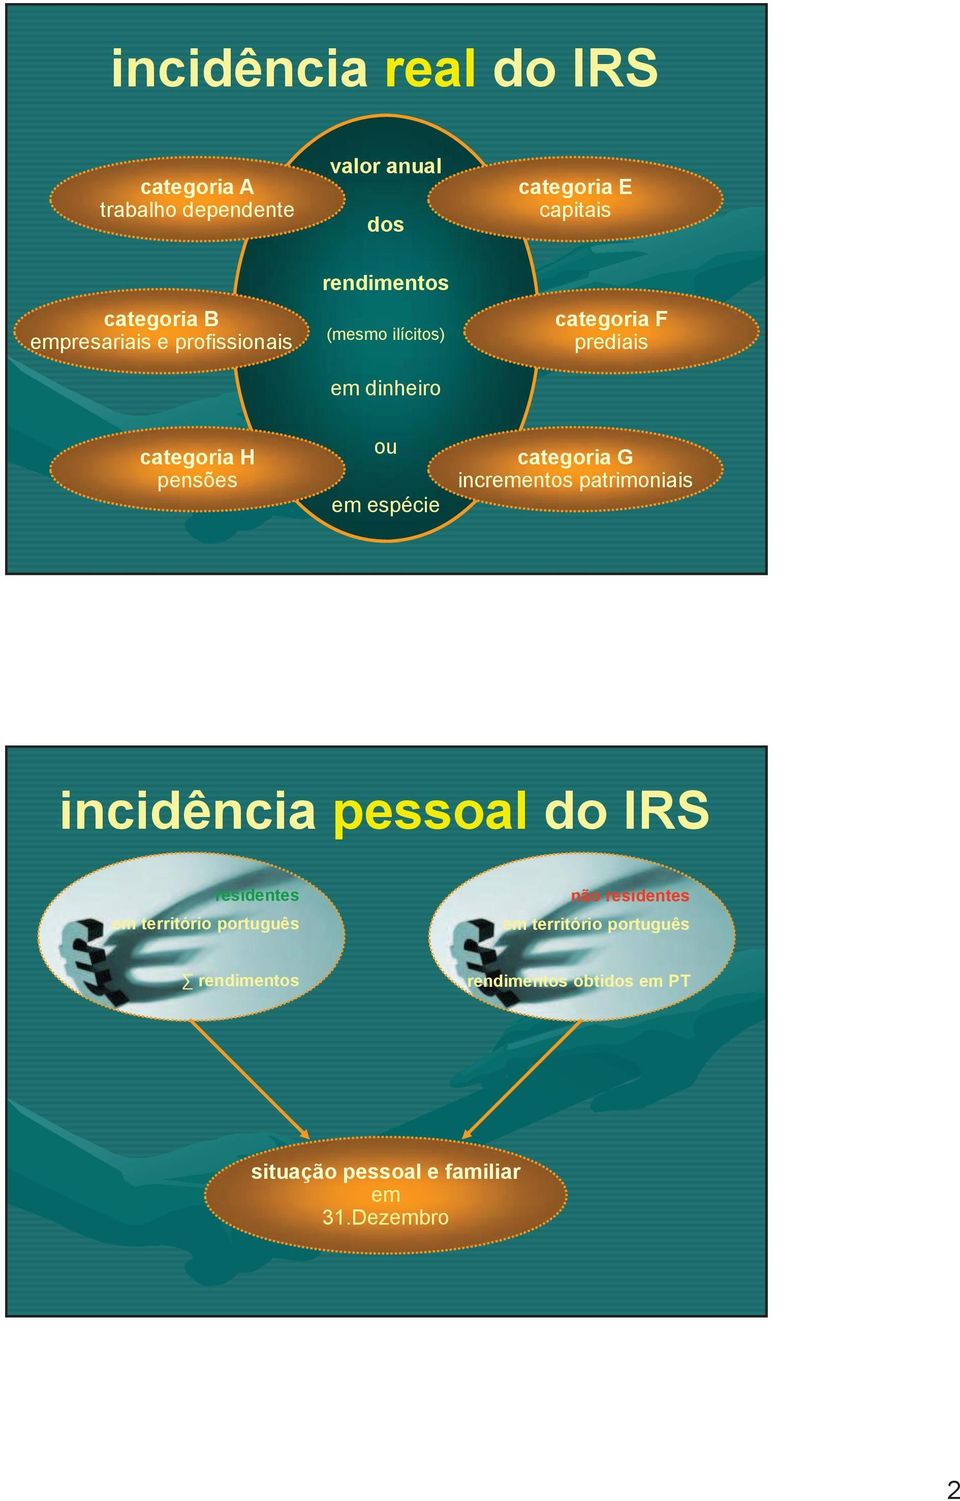 em espéce categora G ncrementos patrmonas ncdênca pessoal do IRS resdentes em terrtóro português não